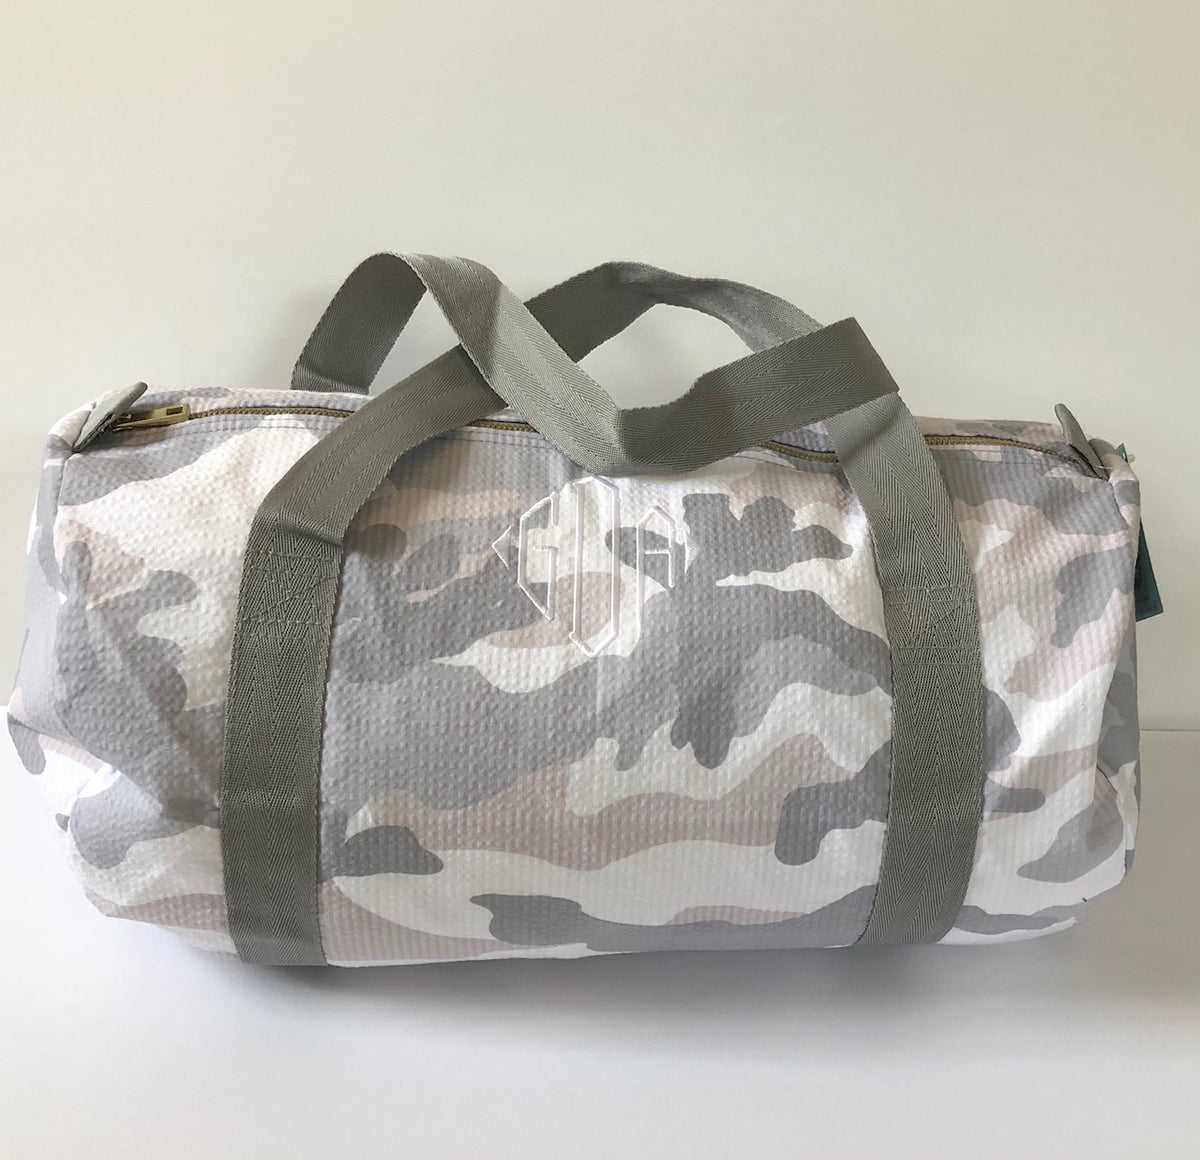 The Monogram Duffle Bag, UhfmrShops